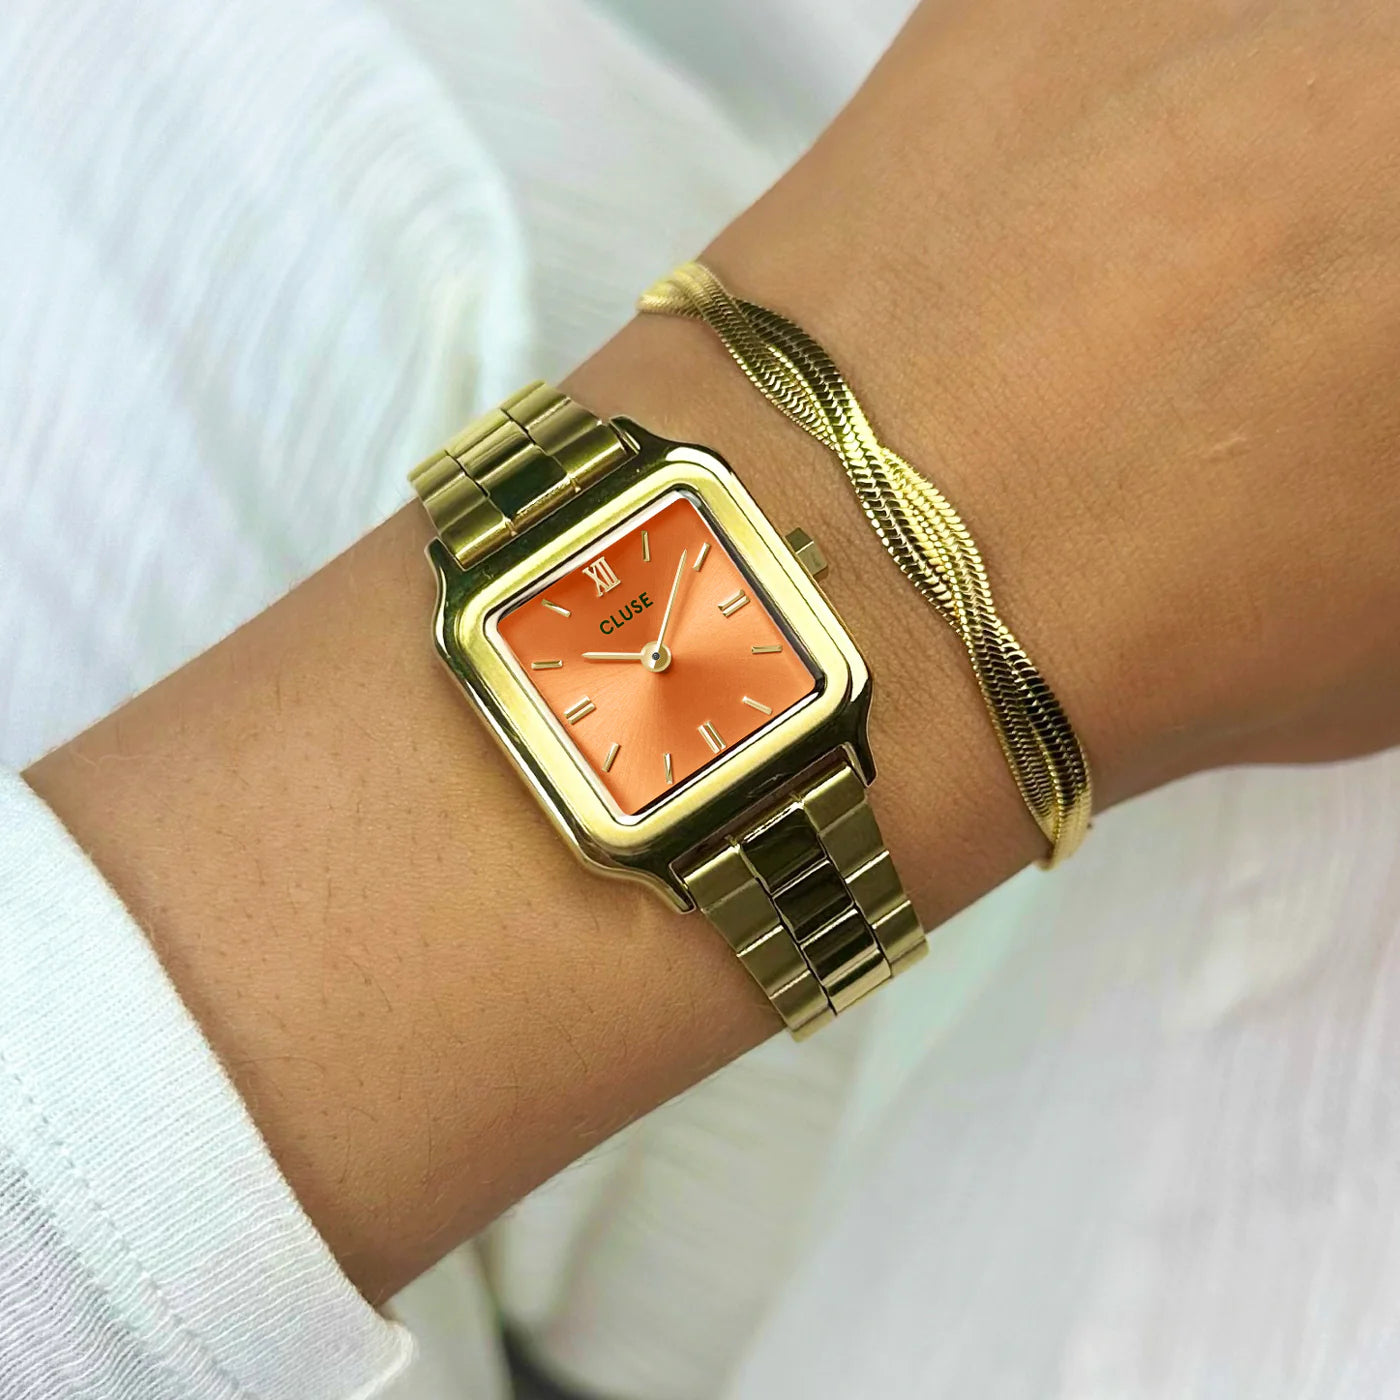 Frau trägt die Cluse Stahl-Uhr "Gracieuse Petite" mit einem gelbgold-farbenem Gehäuse und orangem Zifferblatt an ihrem Handgelenk und kombiniert diese mit einem goldenen Armband